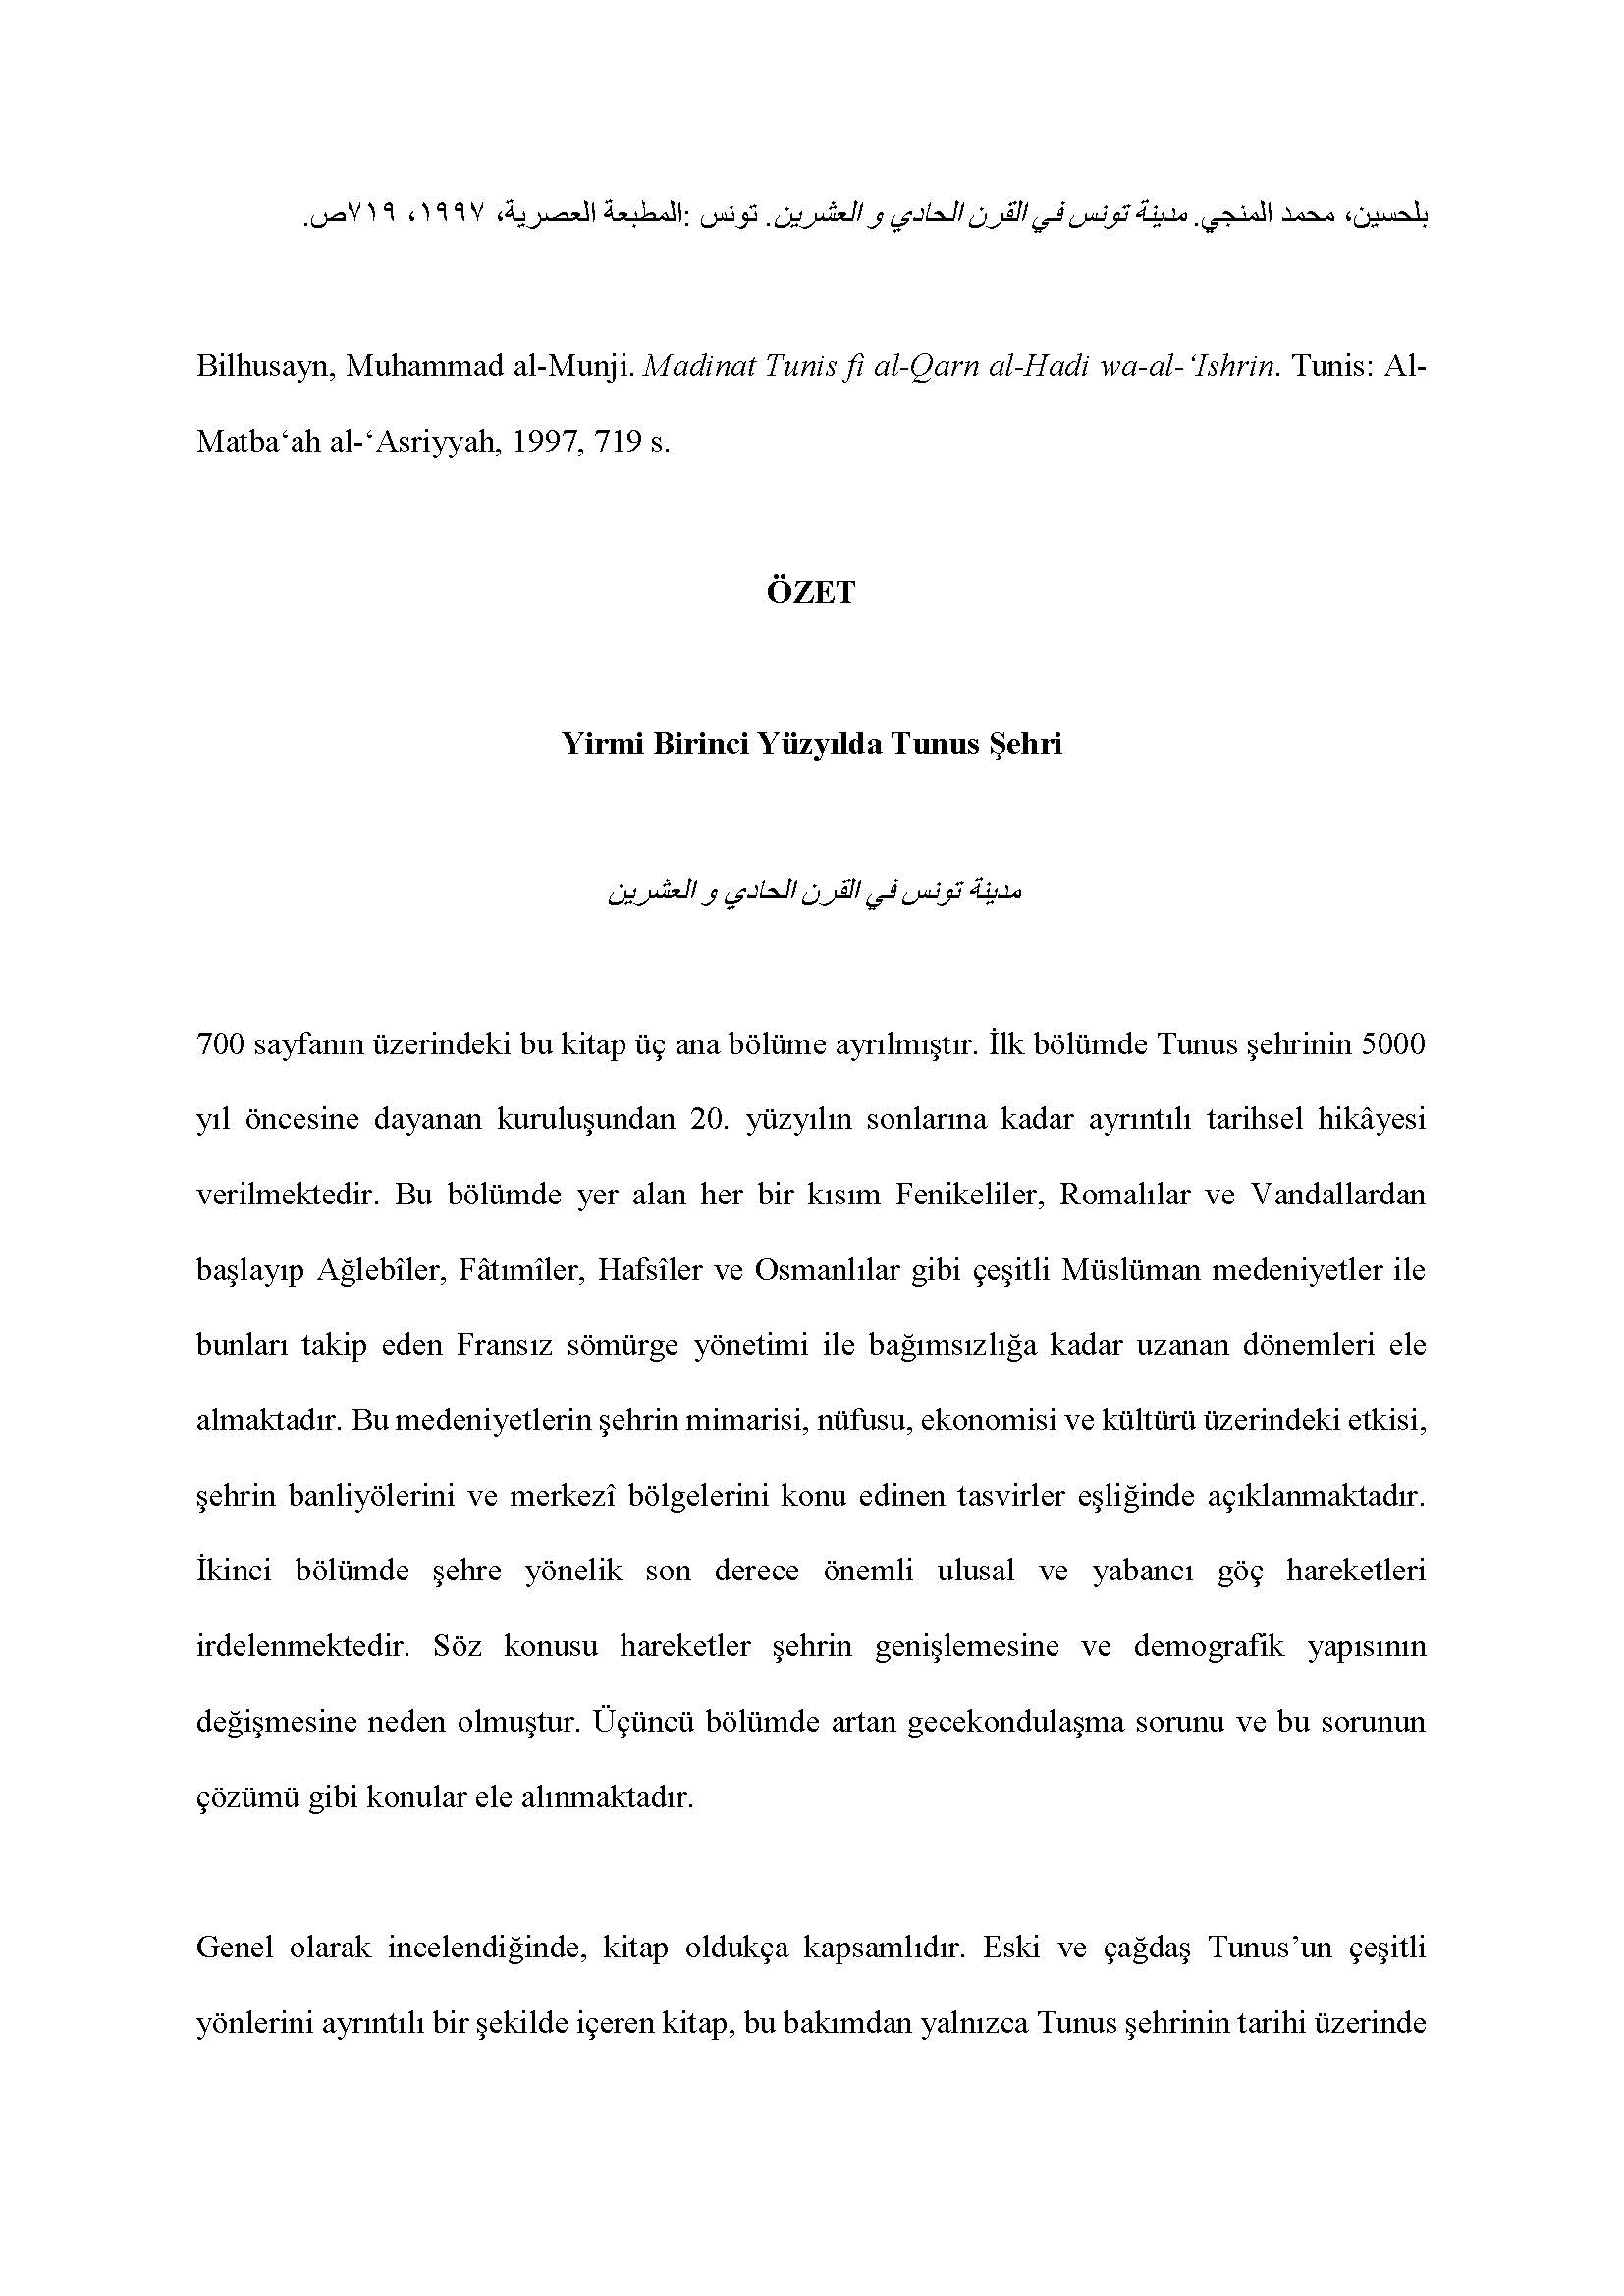  Muhammad al-Munji Bilhusayn - <div style="text-align: right; "><br></div><div><div style="text-align: right; ">بلحسين، محمد المنجي. مدينة تونس في القرن الحادي و العشرين. تونس: المطبعة العصرية، ١٩٩۷، ۷١٩ ص</div><div><br></div><div>Bilhusayn, Muhammad al-Munji. Madinat Tunis fi al-Qarn al-Hadi wa-al-ʻIshrin. Tunis: Al-Matba‘ah al-‘Asriyyah, 1997, 719 s.</div><div><br></div><div style="text-align: center;"><span style="font-weight: bold;">ÖZET</span></div><div style="text-align: center;"><span style="font-weight: bold;"><br></span></div><div style="text-align: center;"><span style="font-weight: bold;">Yirmi Birinci Yüzyılda Tunus Şehri</span></div><div style="text-align: center;"><span style="font-weight: bold;"><br></span></div><div style="text-align: center;"><span style="font-weight: bold;">مدينة تونس في القرن الحادي و العشرين</span></div><div><br></div><div>700 sayfanın üzerindeki bu kitap üç ana bölüme ayrılmıştır. İlk bölümde Tunus şehrinin 5000 yıl öncesine dayanan kuruluşundan 20. yüzyılın sonlarına kadar ayrıntılı tarihsel hikâyesi verilmektedir. Bu bölümde yer alan her bir kısım Fenikeliler, Romalılar ve Vandallardan başlayıp Ağlebîler, Fâtımîler, Hafsîler ve Osmanlılar gibi çeşitli Müslüman medeniyetler ile bunları takip eden Fransız sömürge yönetimi ile bağımsızlığa kadar uzanan dönemleri ele almaktadır. Bu medeniyetlerin şehrin mimarisi, nüfusu, ekonomisi ve kültürü üzerindeki etkisi, şehrin banliyölerini ve merkezî bölgelerini konu edinen tasvirler eşliğinde açıklanmaktadır. İkinci bölümde şehre yönelik son derece önemli ulusal ve yabancı göç hareketleri irdelenmektedir. Söz konusu hareketler şehrin genişlemesine ve demografik yapısının değişmesine neden olmuştur. Üçüncü bölümde artan gecekondulaşma sorunu ve bu sorunun çözümü gibi konular ele alınmaktadır.</div><div><br></div><div>Genel olarak incelendiğinde, kitap oldukça kapsamlıdır. Eski ve çağdaş Tunus’un çeşitli yönlerini ayrıntılı bir şekilde içeren kitap, bu bakımdan yalnızca Tunus şehrinin tarihi üzerinde çalışan araştırmacılar tarafından değil, aynı zamanda genel Tunus tarihini araştıranlar tarafından da kullanılabilecek önemli bir kaynaktır. Bölümlerin kronolojik tertibi kitabı okumayı ve şehrin zaman içerisinde geçirdiği dönüşümü takip etmeyi kolaylaştırmaktadır. Ayrıca, kitabı pek çok okur için anlaşılır kılan basit basit bir dil kullanmaktadır ki, Öte yandan, yazar, her bölümün sonunda bazı resimler sunmakta ve böylece kitabın konusunu daha somut hâle getirmektedir. Yazarın Tunuslu olması, verdiği açıklamaların ve tasvirlerin gerçekliğini ve orijinalliğini güçlendirmektedir.</div><div><br></div><div>Bununla birlikte, kitabın bazı kusurları bulunmaktadır. Örneğin, kitabın başlığı içeriği yansıtmamakta ve bu nedenle de okuyucuyu kitabın yalnızca 21. yüzyılı ele aldığını düşündürmektedir. Bir diğer önemli zaaf ise, yazarın zikrettiği bilgileri sık sık yeniden dile getirmesi nedeniyle ortaya çıkan tekrarlardır. Buna ilaveten, kitapta alıntı yapılan kaynakların sayısı son derece sınırlıdır ve kaynakça bu zaafı yansıtmaktadır. Son olarak, her ne kadar yazar pek çok kavramın tanımlarını veriyorsa da önemli bir kavramı açıklamamaktadır: “al-Hadira”. Açıktır ki, yazar, her okuyucunun bu kavramı bildiğini varsaymaktadır. Fakat bu kavramın sonradan Tunus ülkesinin başkenti olan Tunus şehrinin ismi olduğunu tahmin etmek, Tunuslu olmayan bir okuyucu için son derece zordur.</div><div><br></div><div>Meriam Ben Amor</div><div><br></div><div>Çeviren Fatih Taştan</div></div>